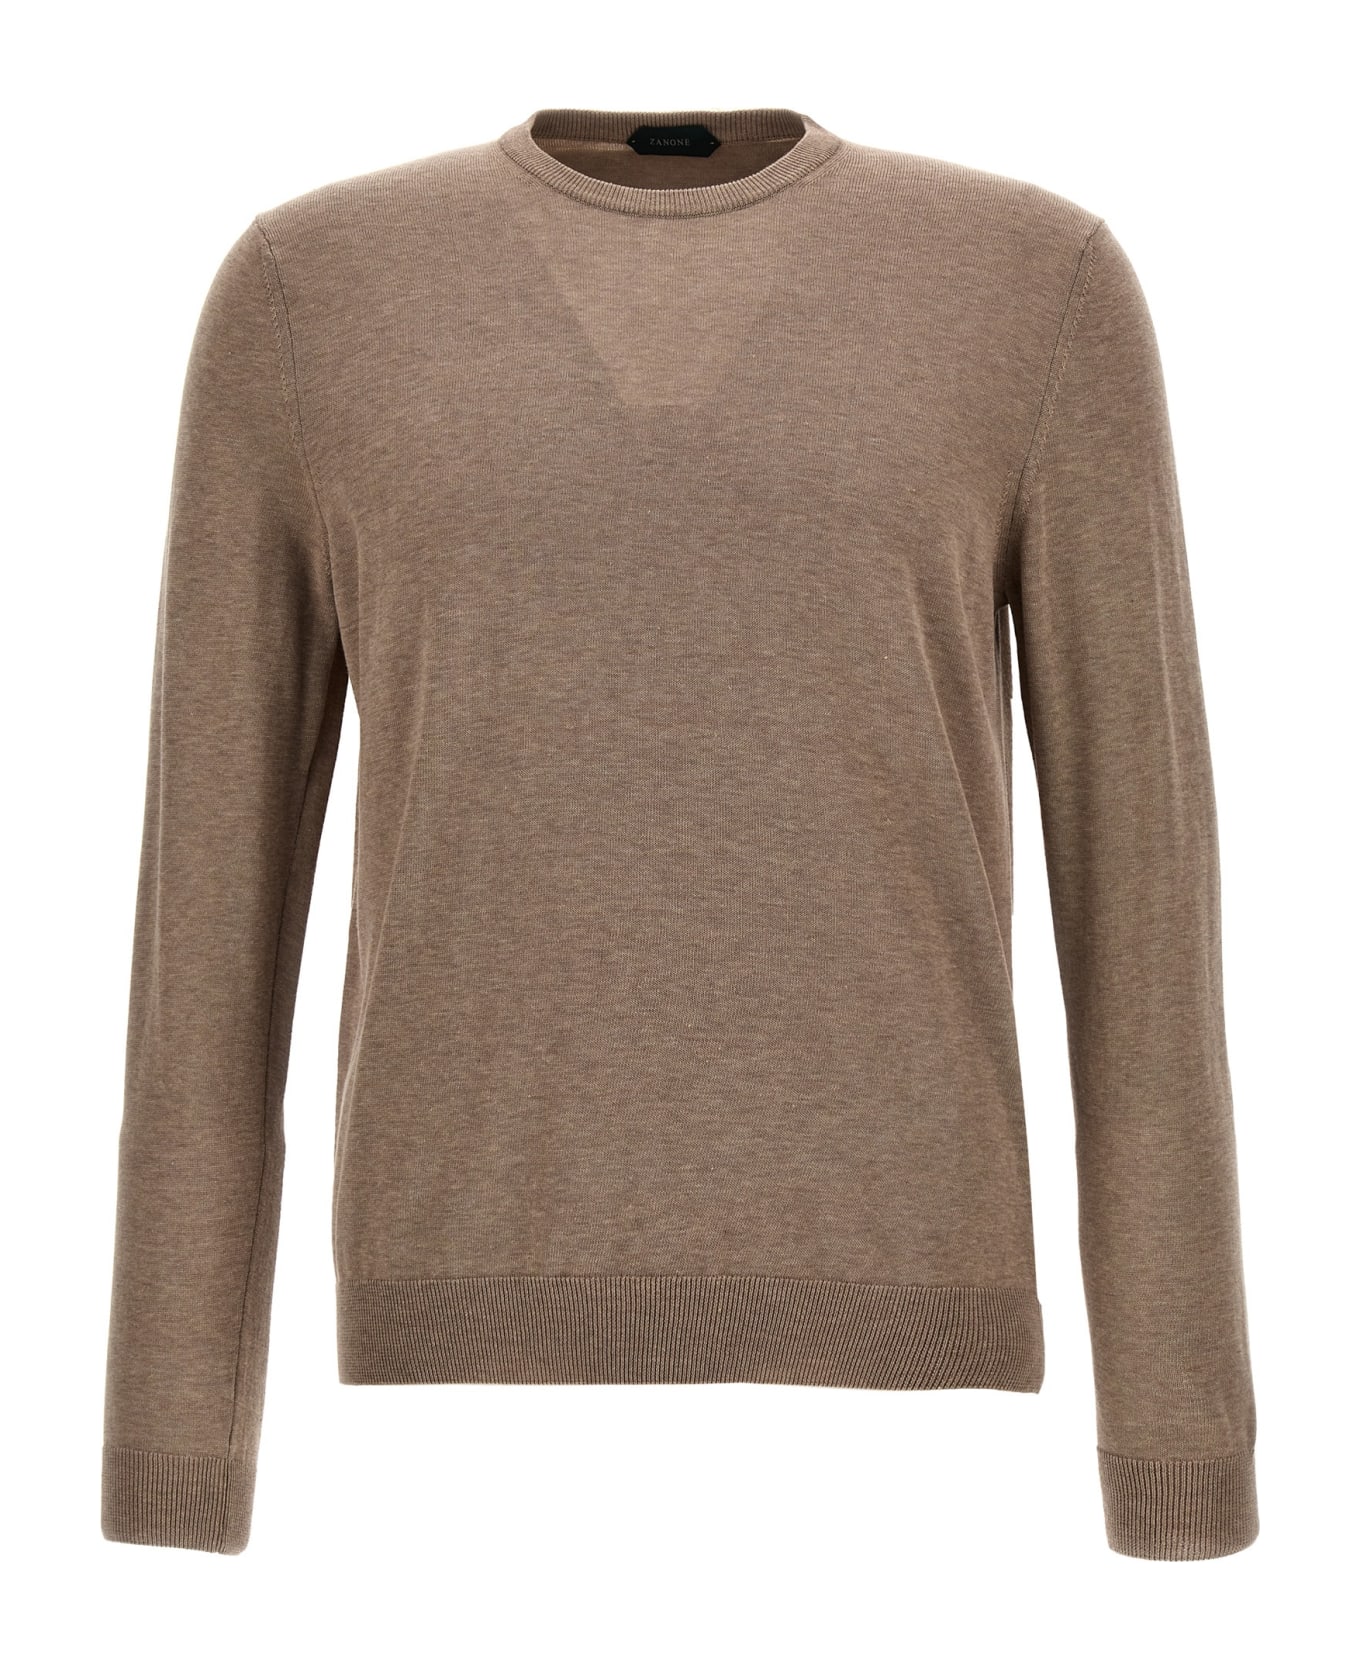 Zanone Cotton Crepe Sweater - Beige